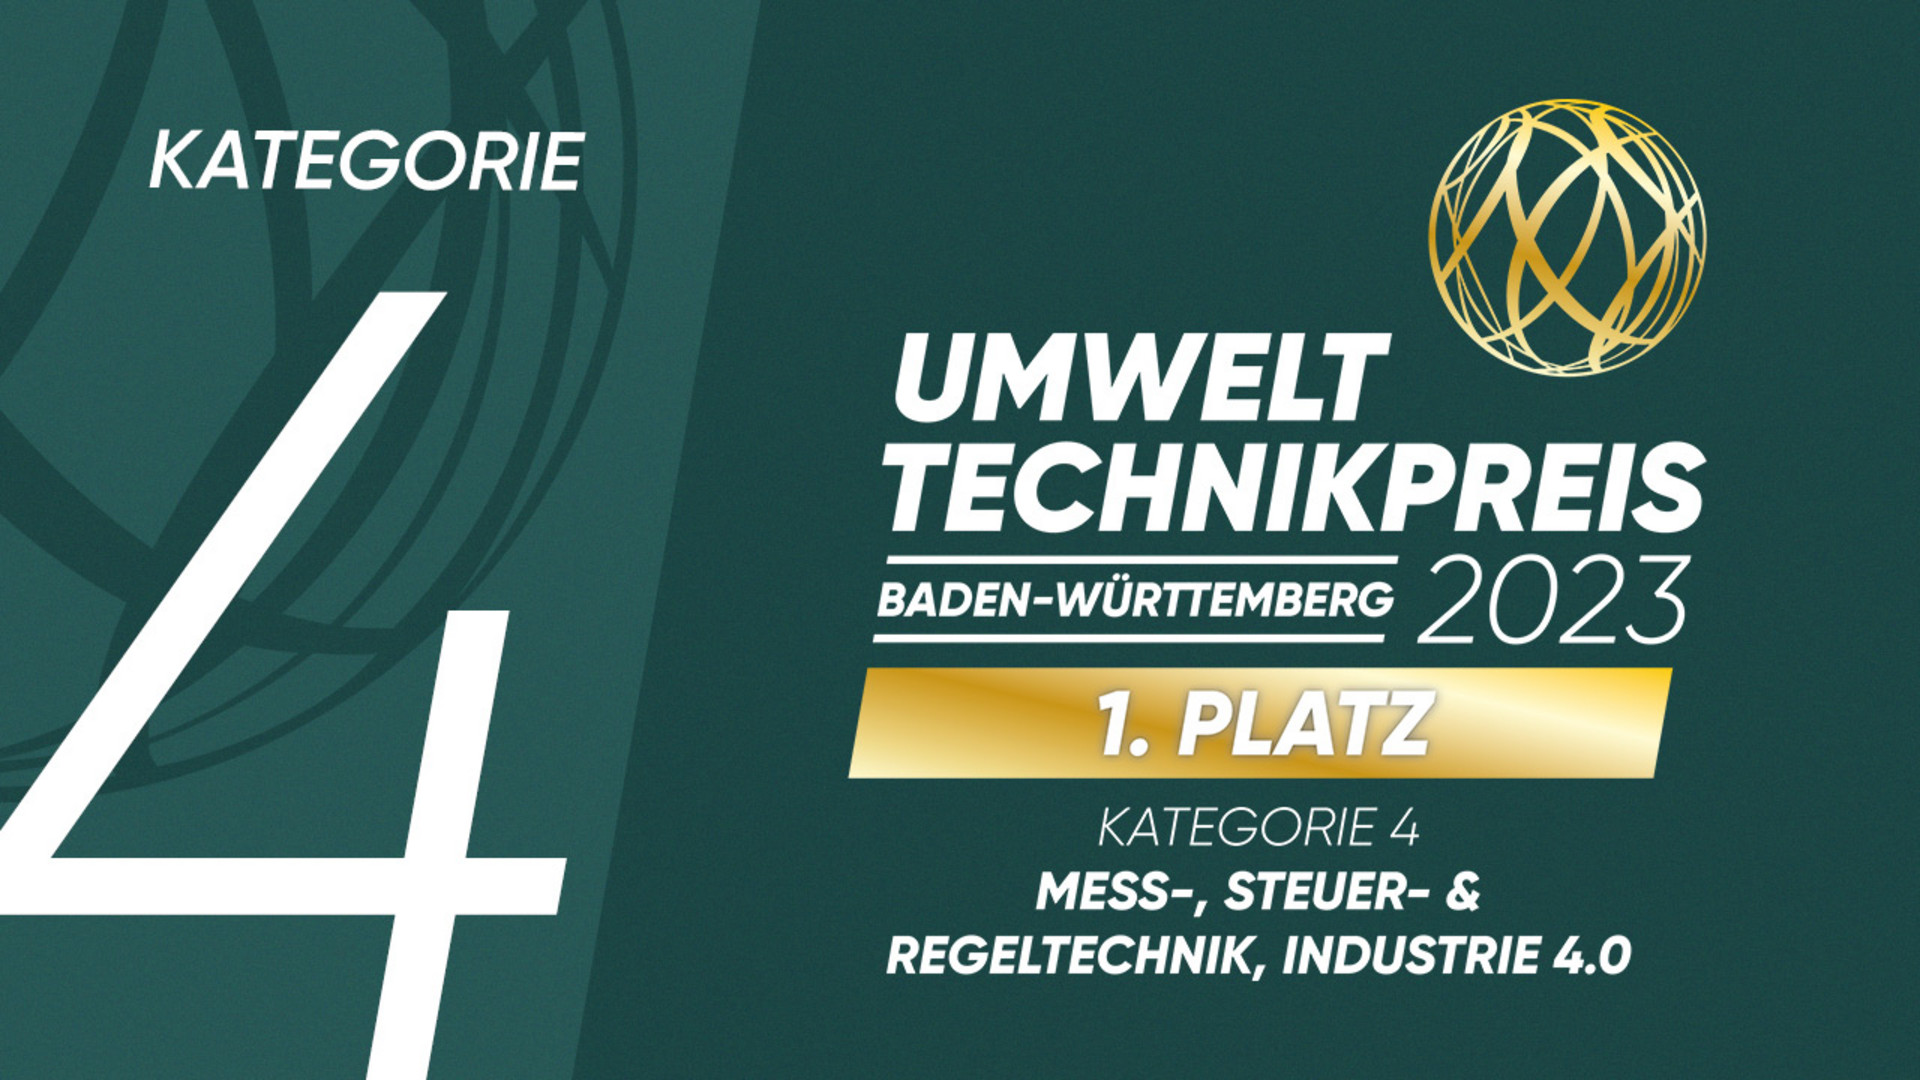 Umwelttechnikpreis Baden-Württemberg 2023: 1. Platz in der Kategorie 4 „Mess-, Steuer- und Regeltechnik, Industrie 4.0“